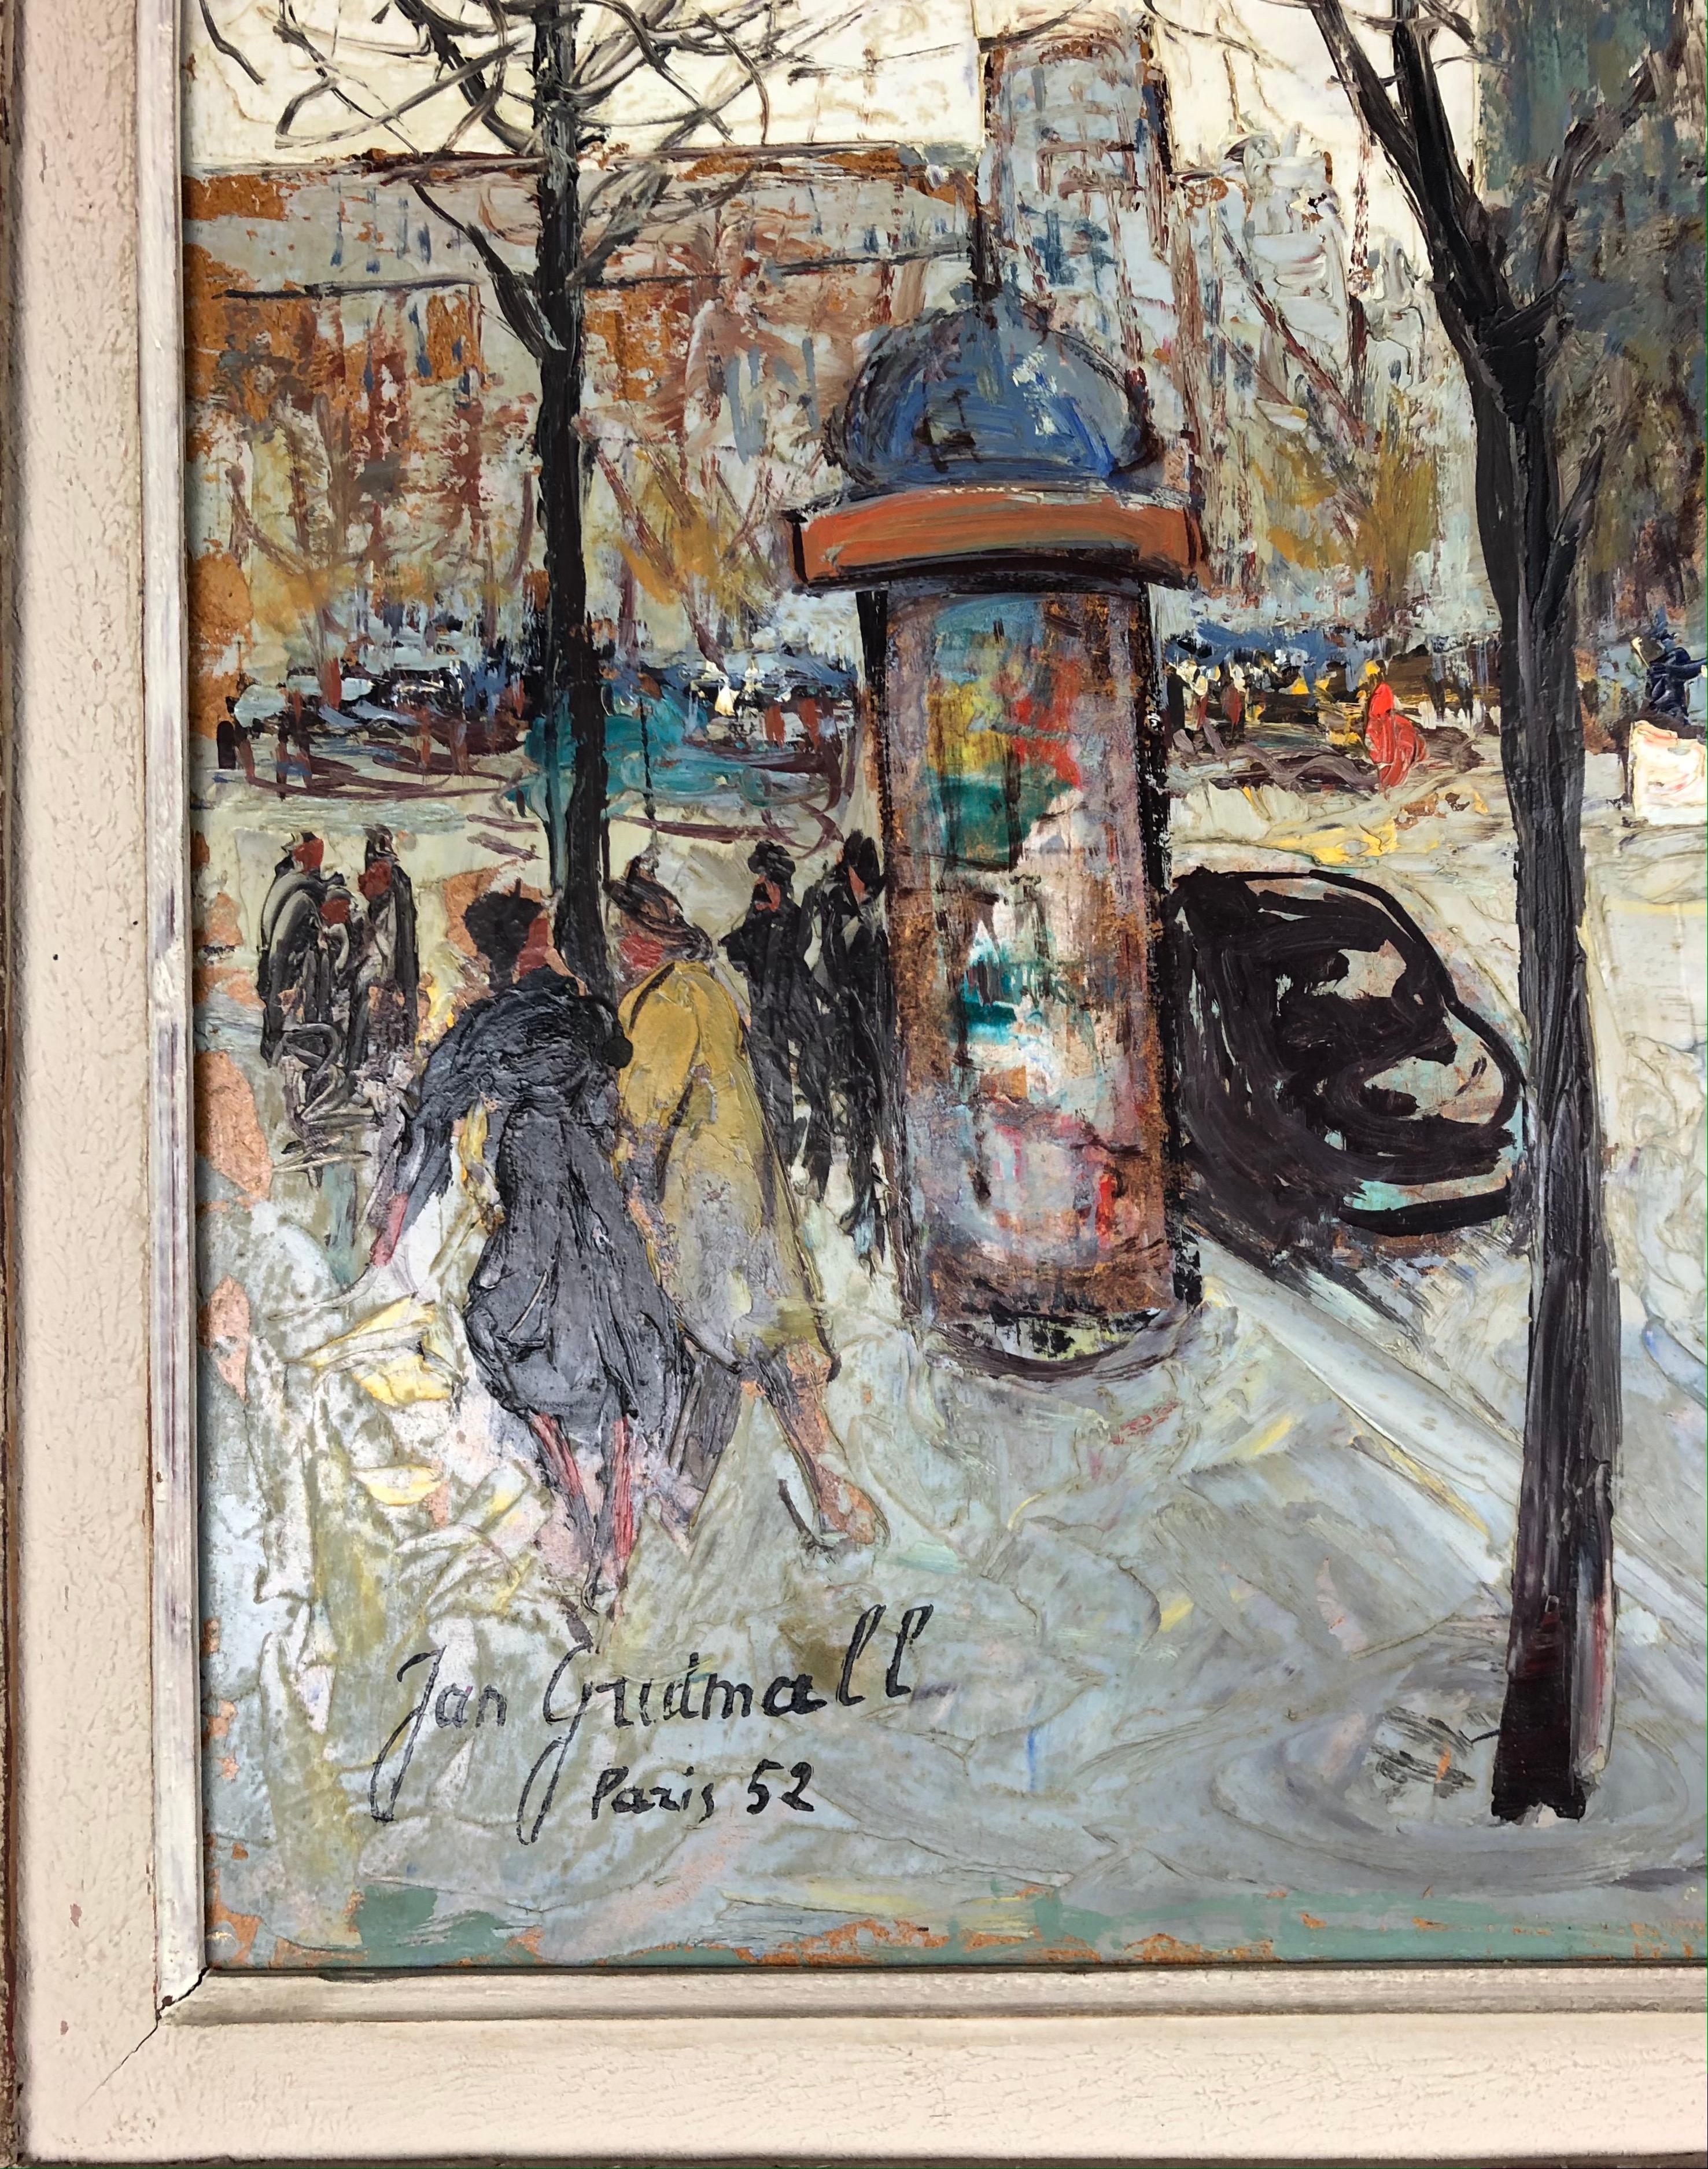 Français Peinture à l'huile - Paysage urbain de Paris par Jan Gridmall, signée et datée de 1952 en vente